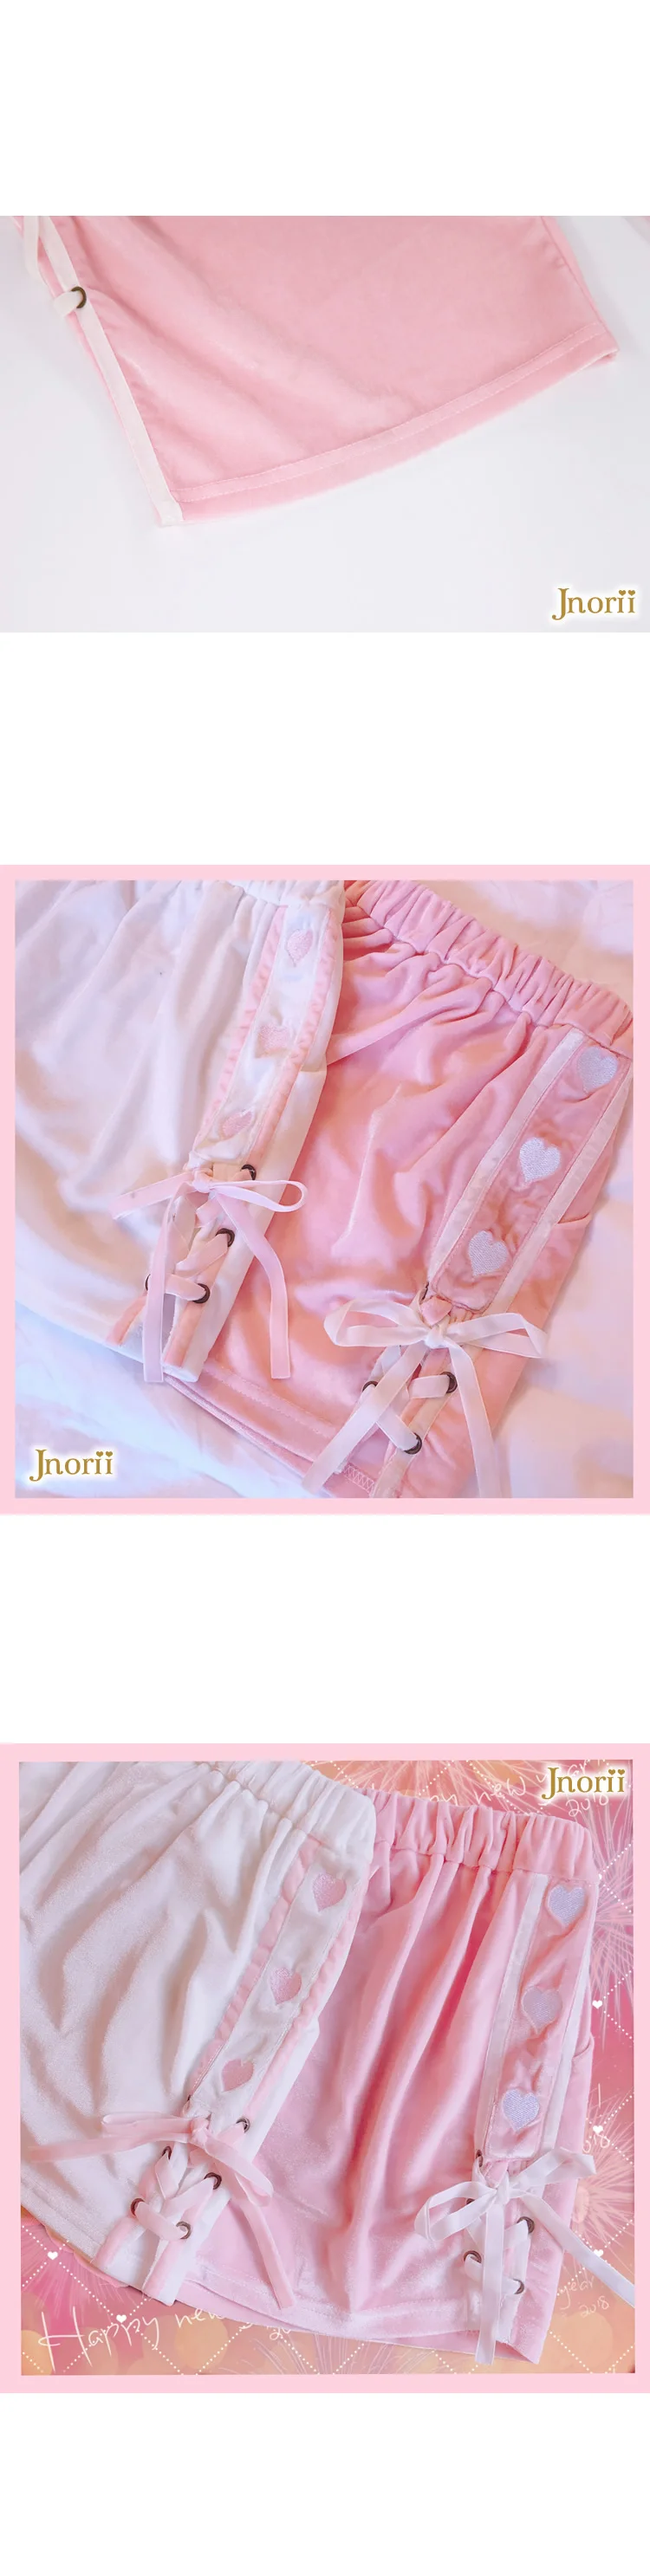 Bobon21 женские свободные шорты Модный фланелевый бархат короткие Feminino удобные Pantalones короткие брюки женские спортивные розовые B1625